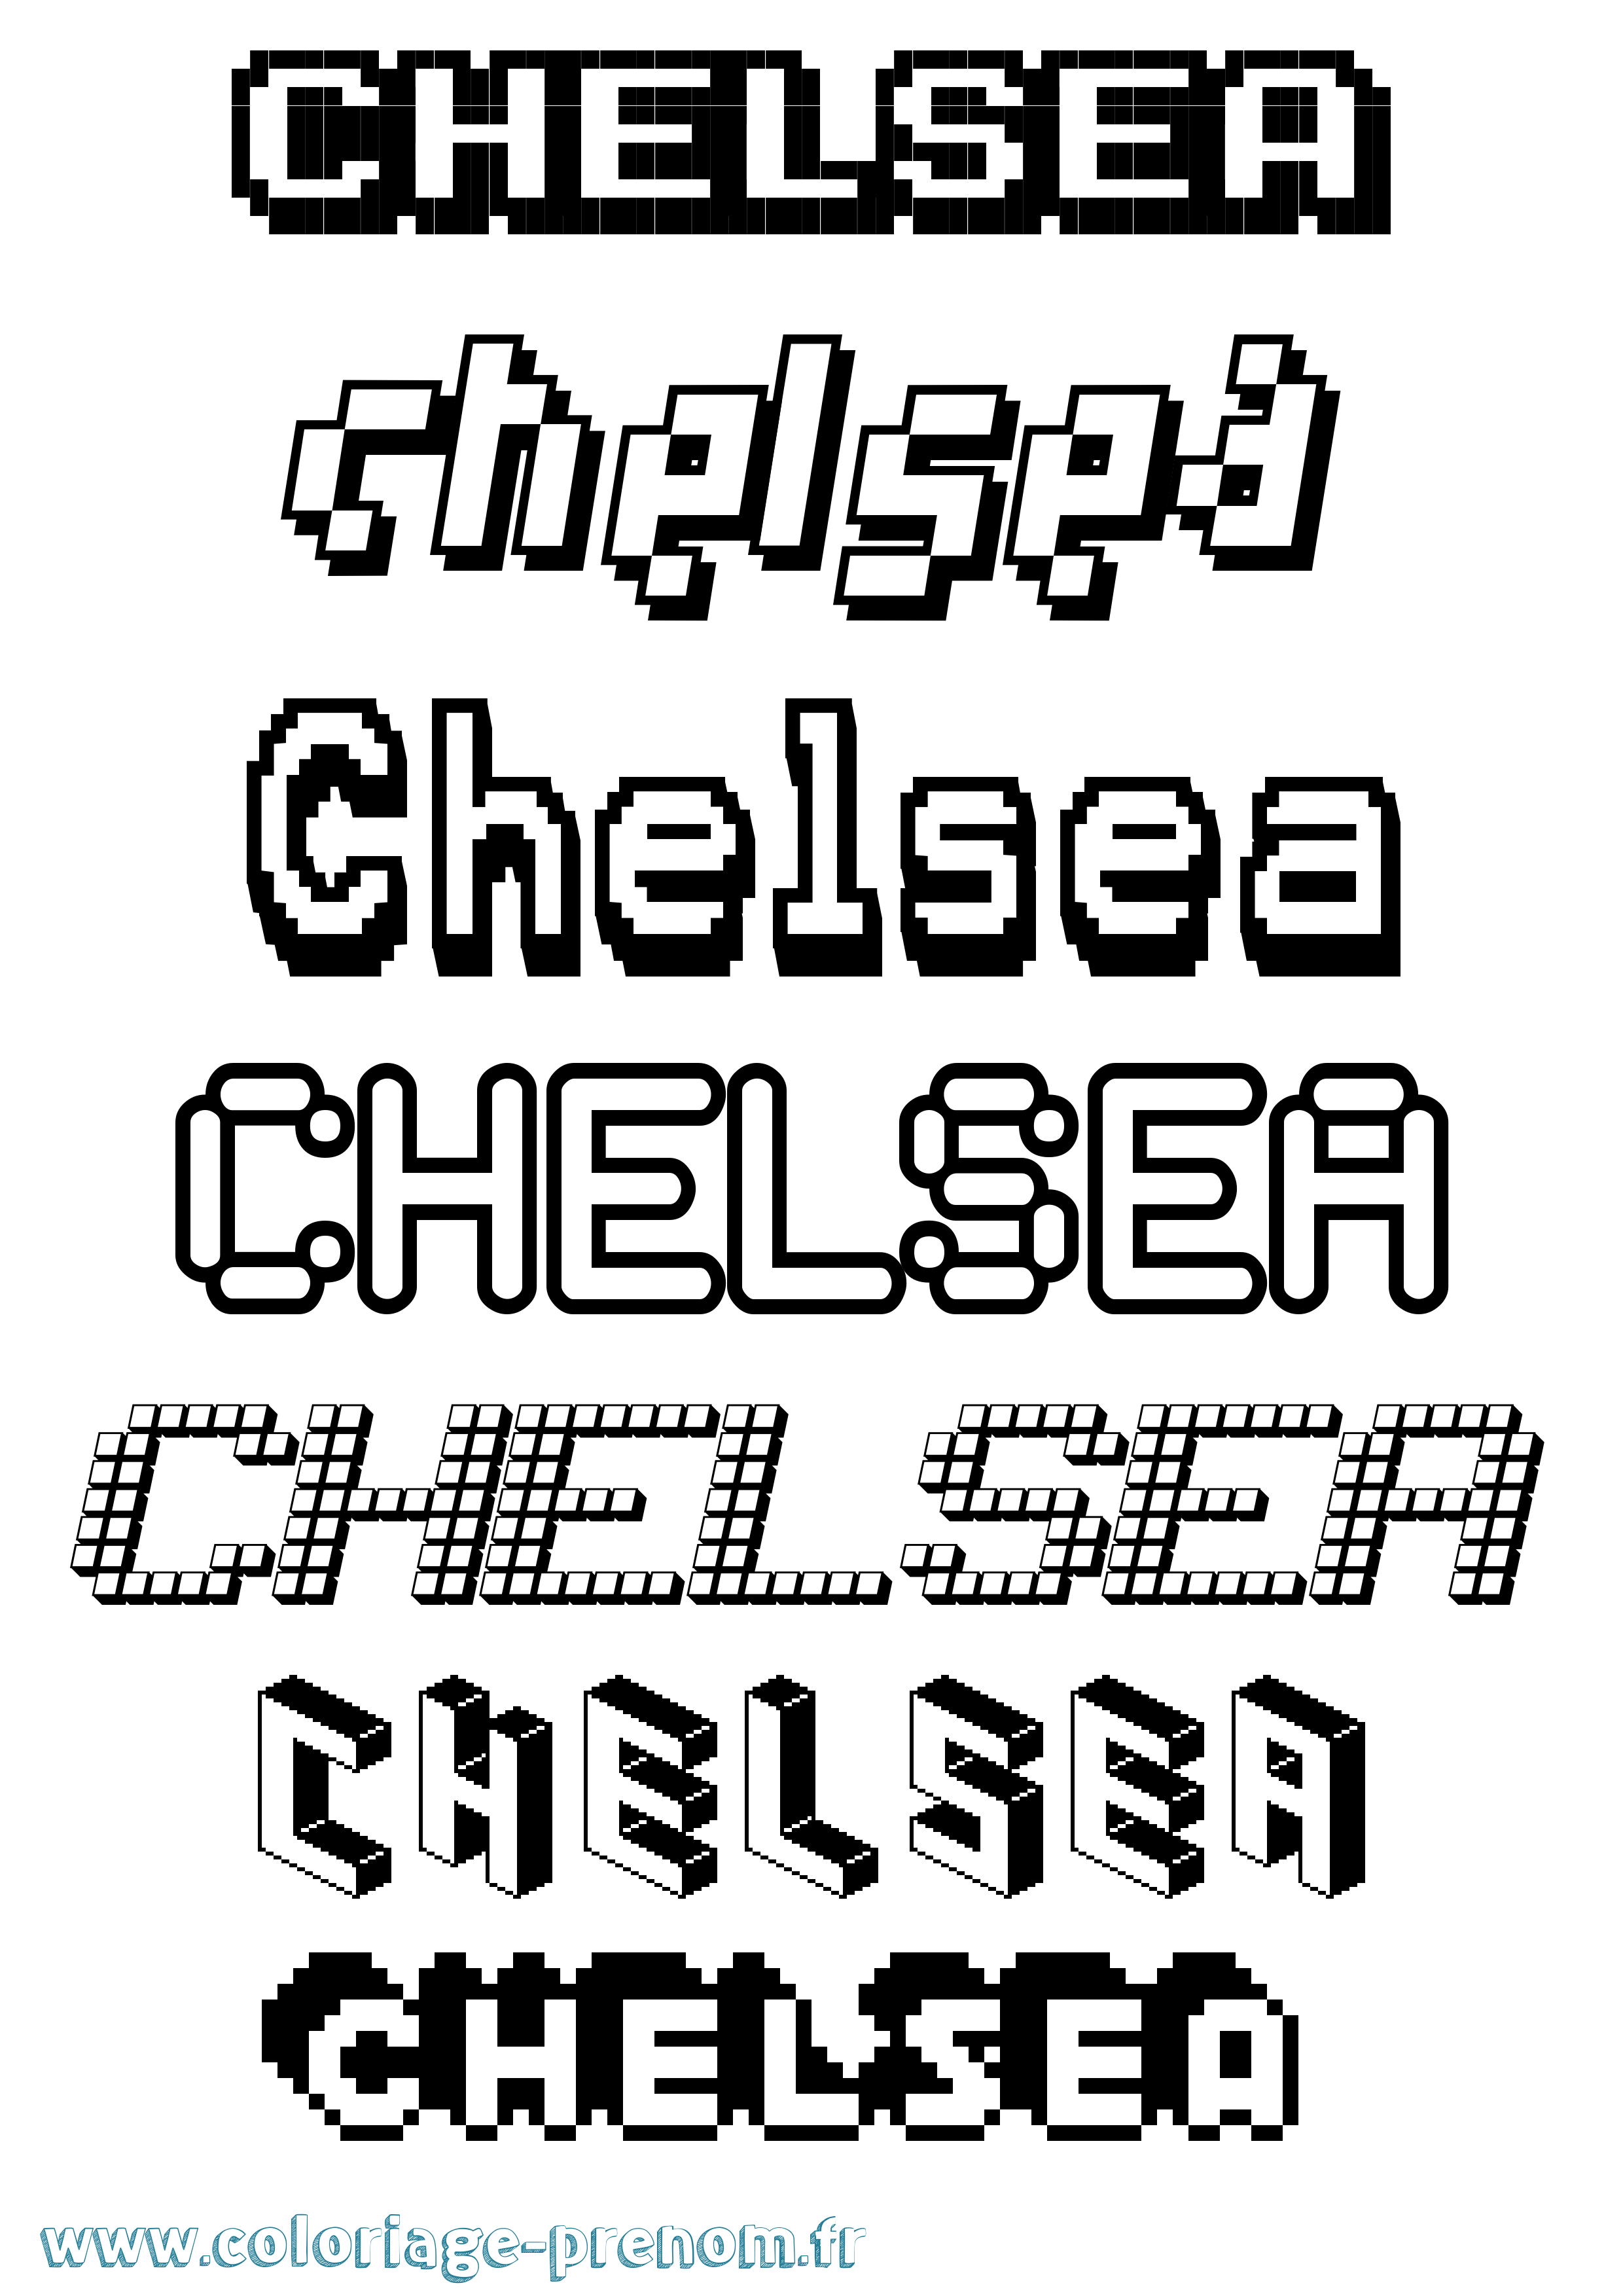 Coloriage prénom Chelsea